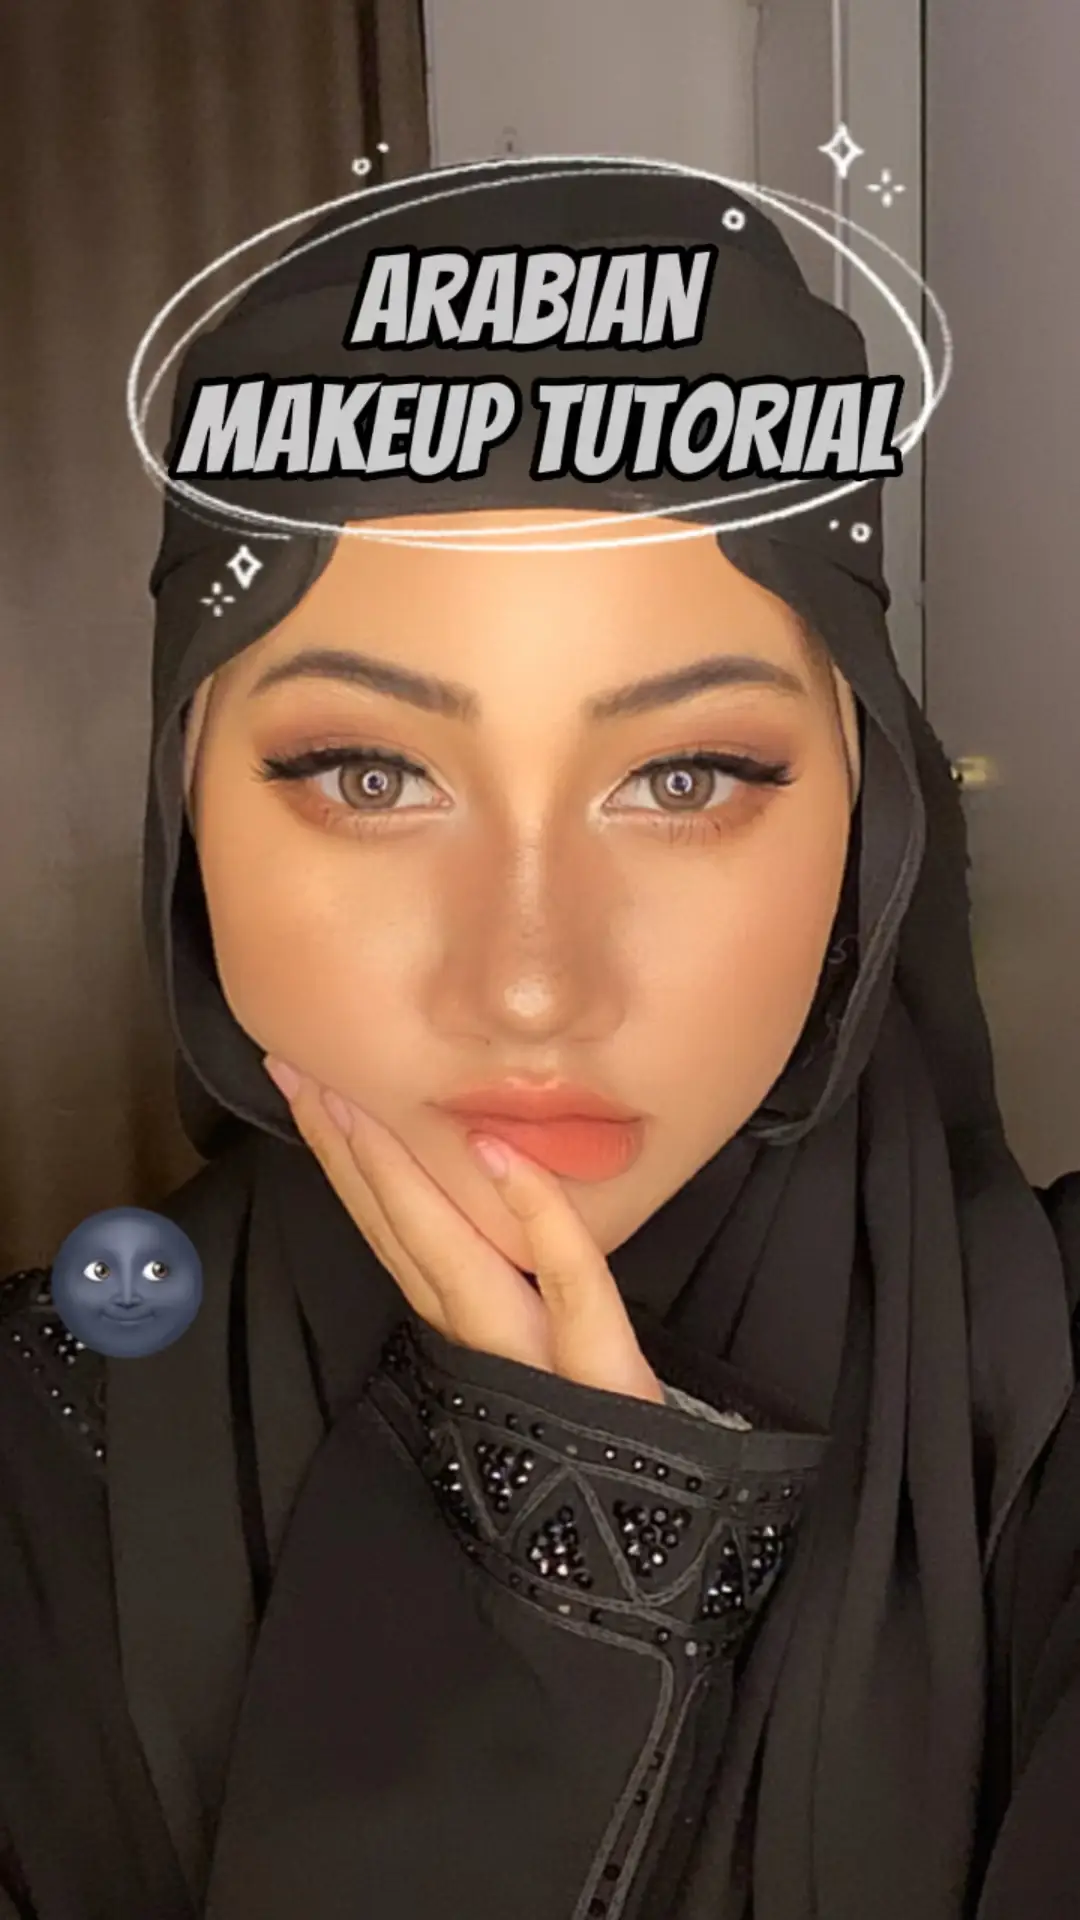 Arabian Makeup Tutorial